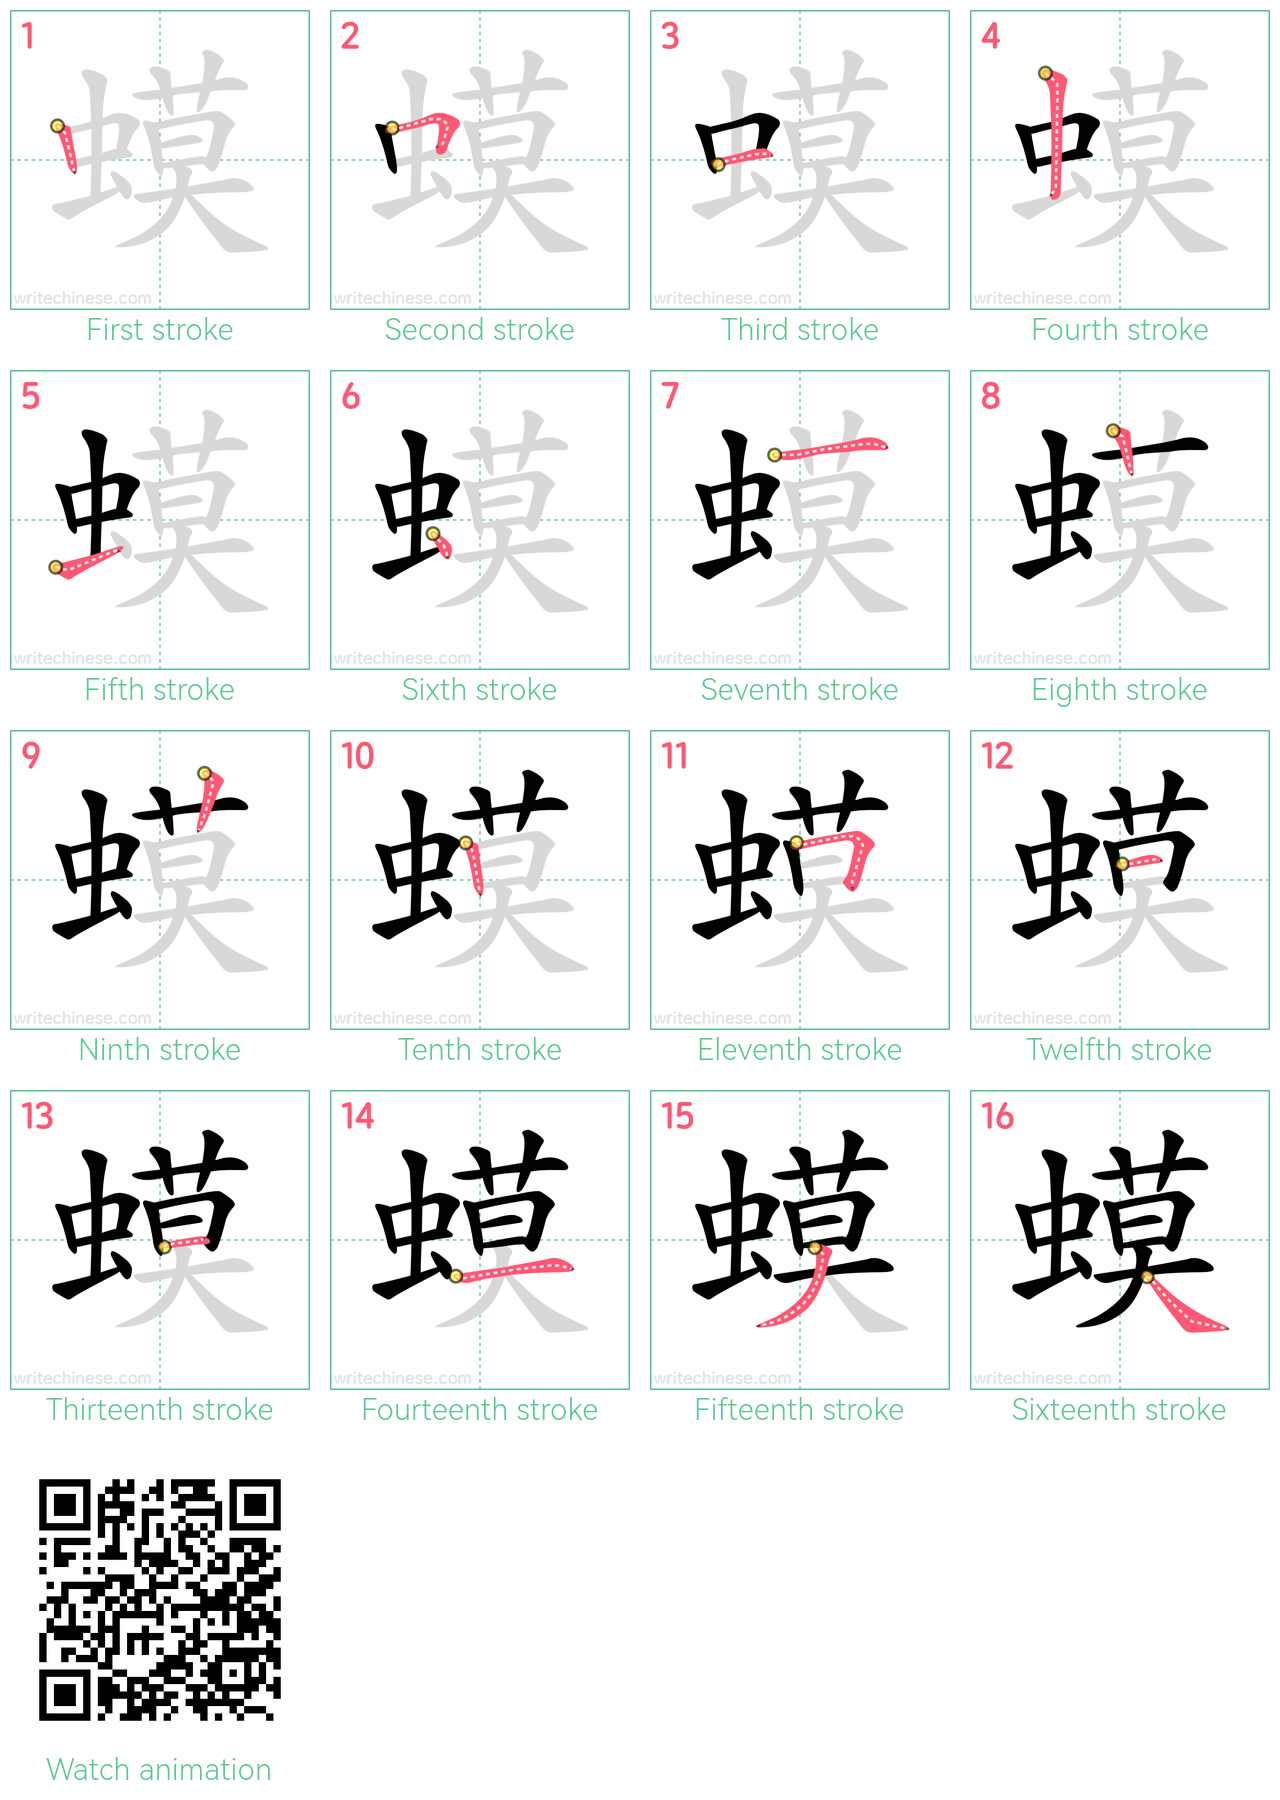 蟆 step-by-step stroke order diagrams